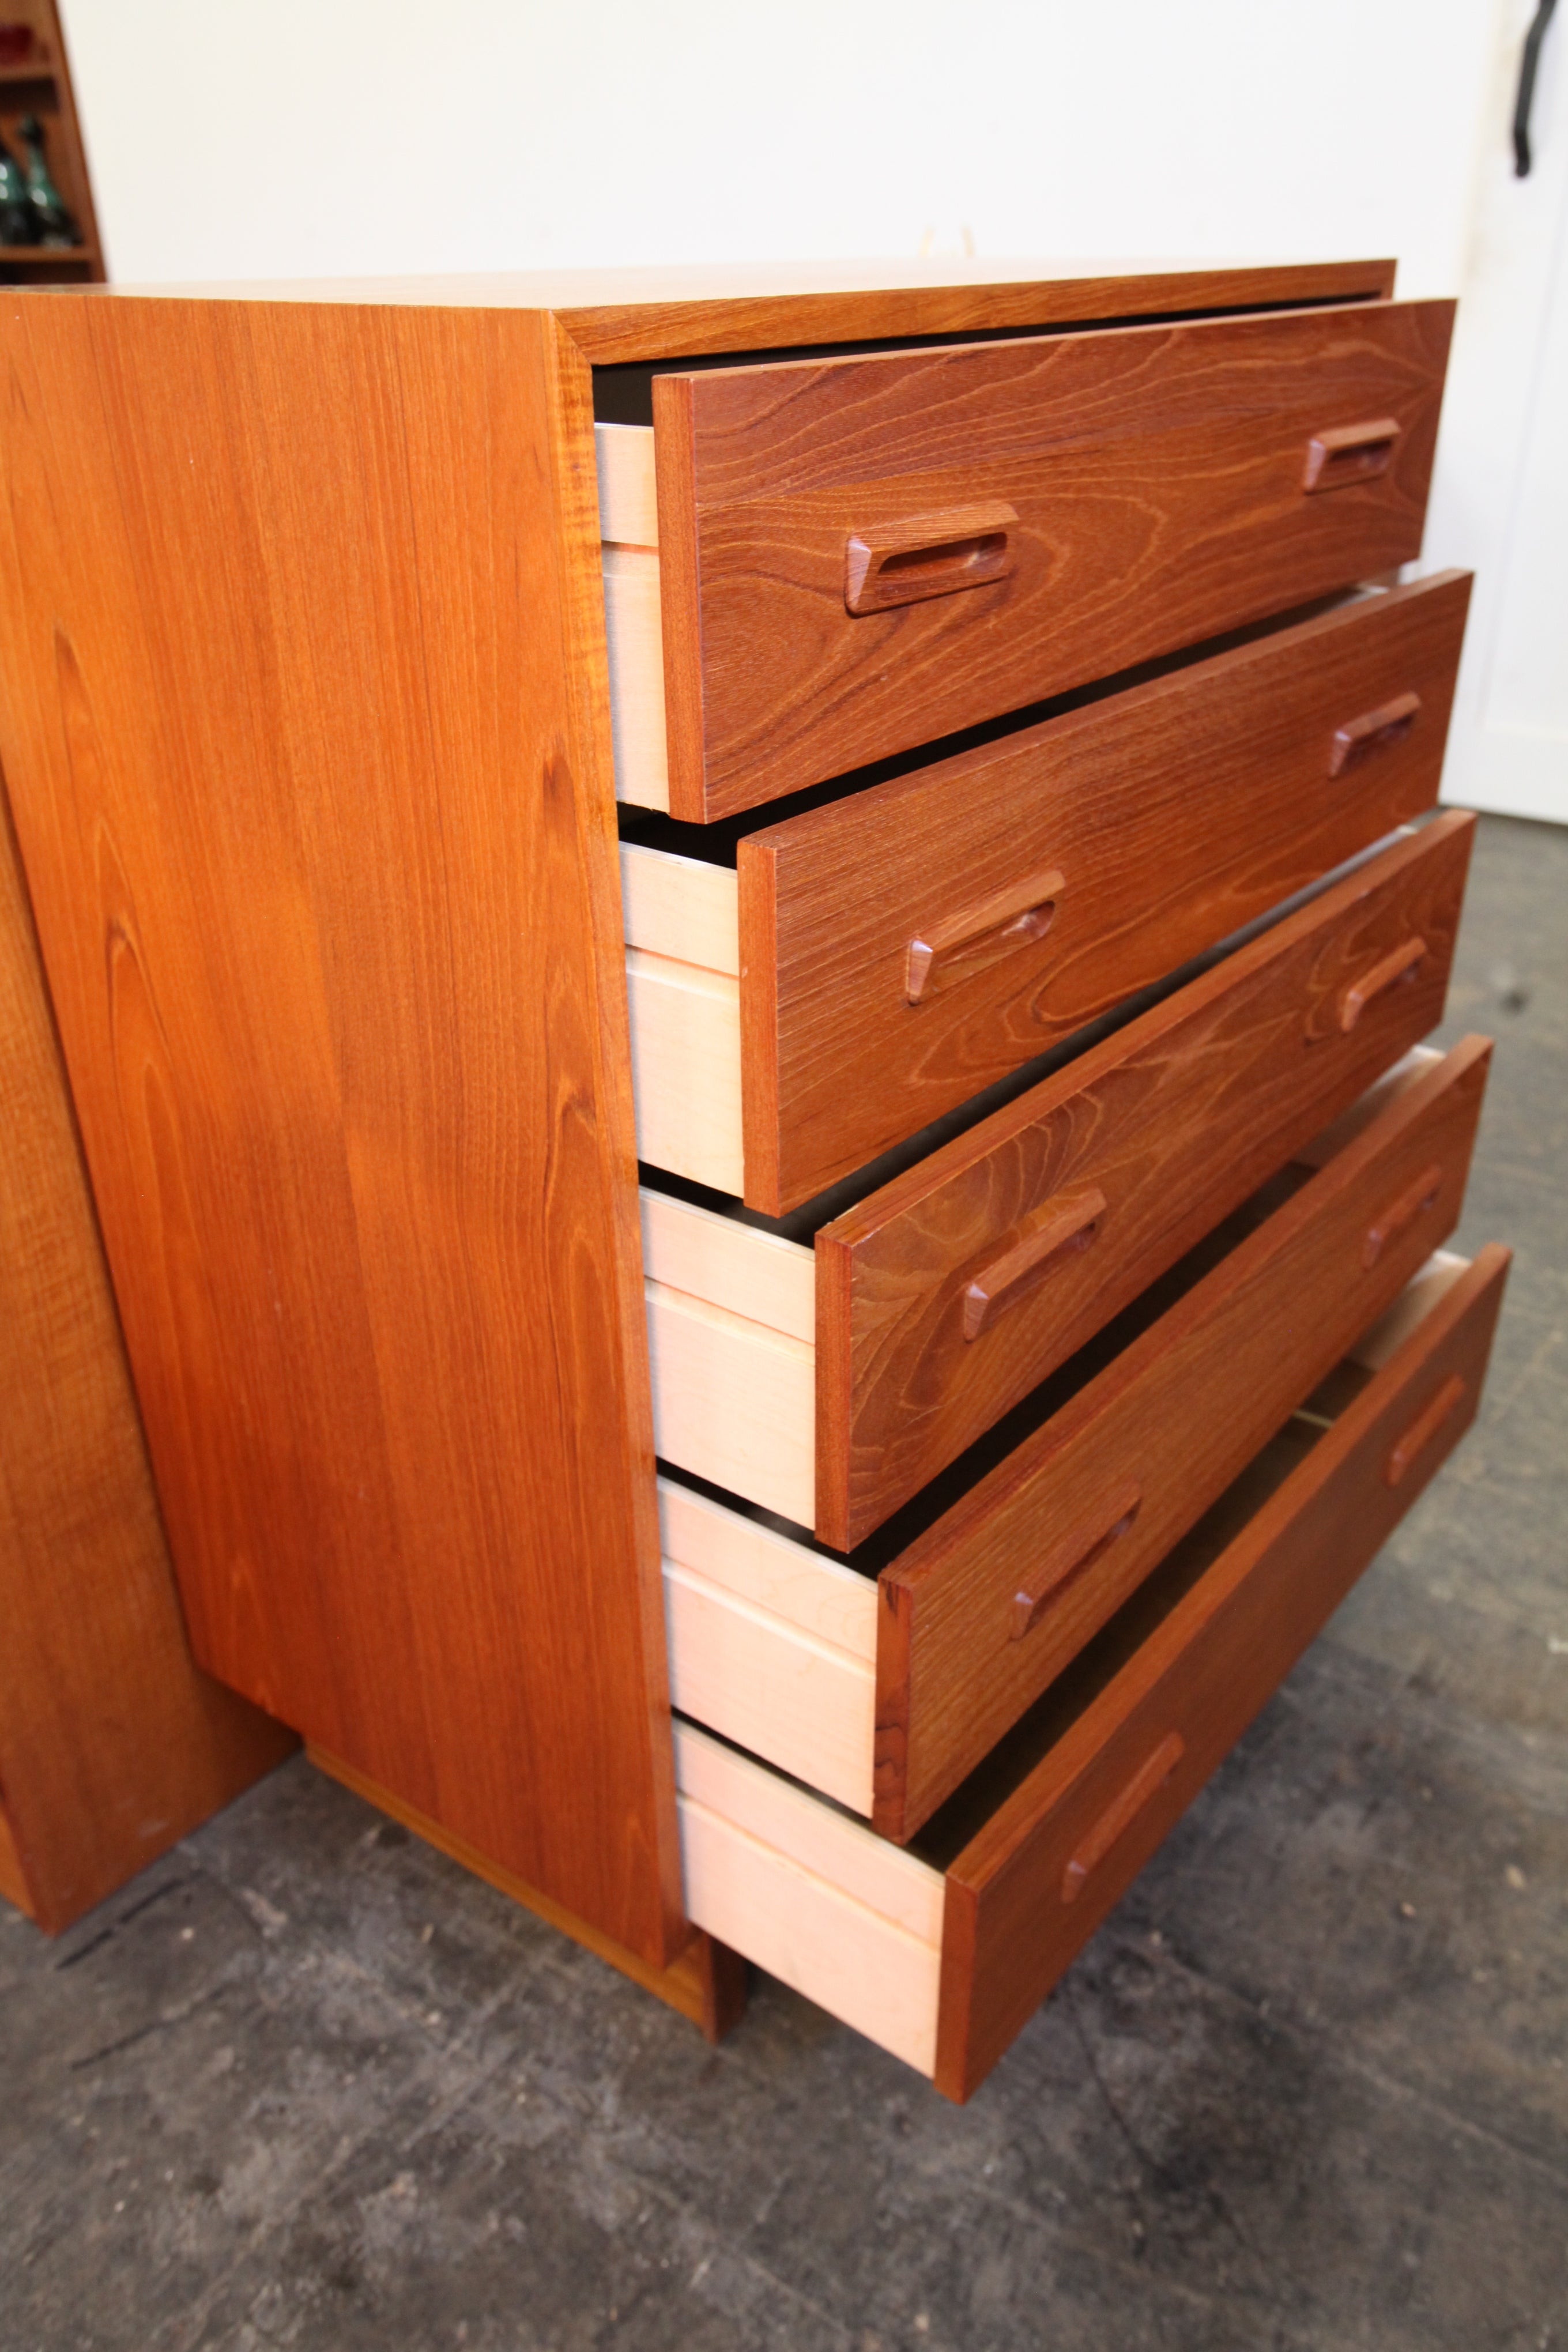 Vintage Teak 5 Drawer Tallboy Dresser (30"W x 16"D x 37.5"H)